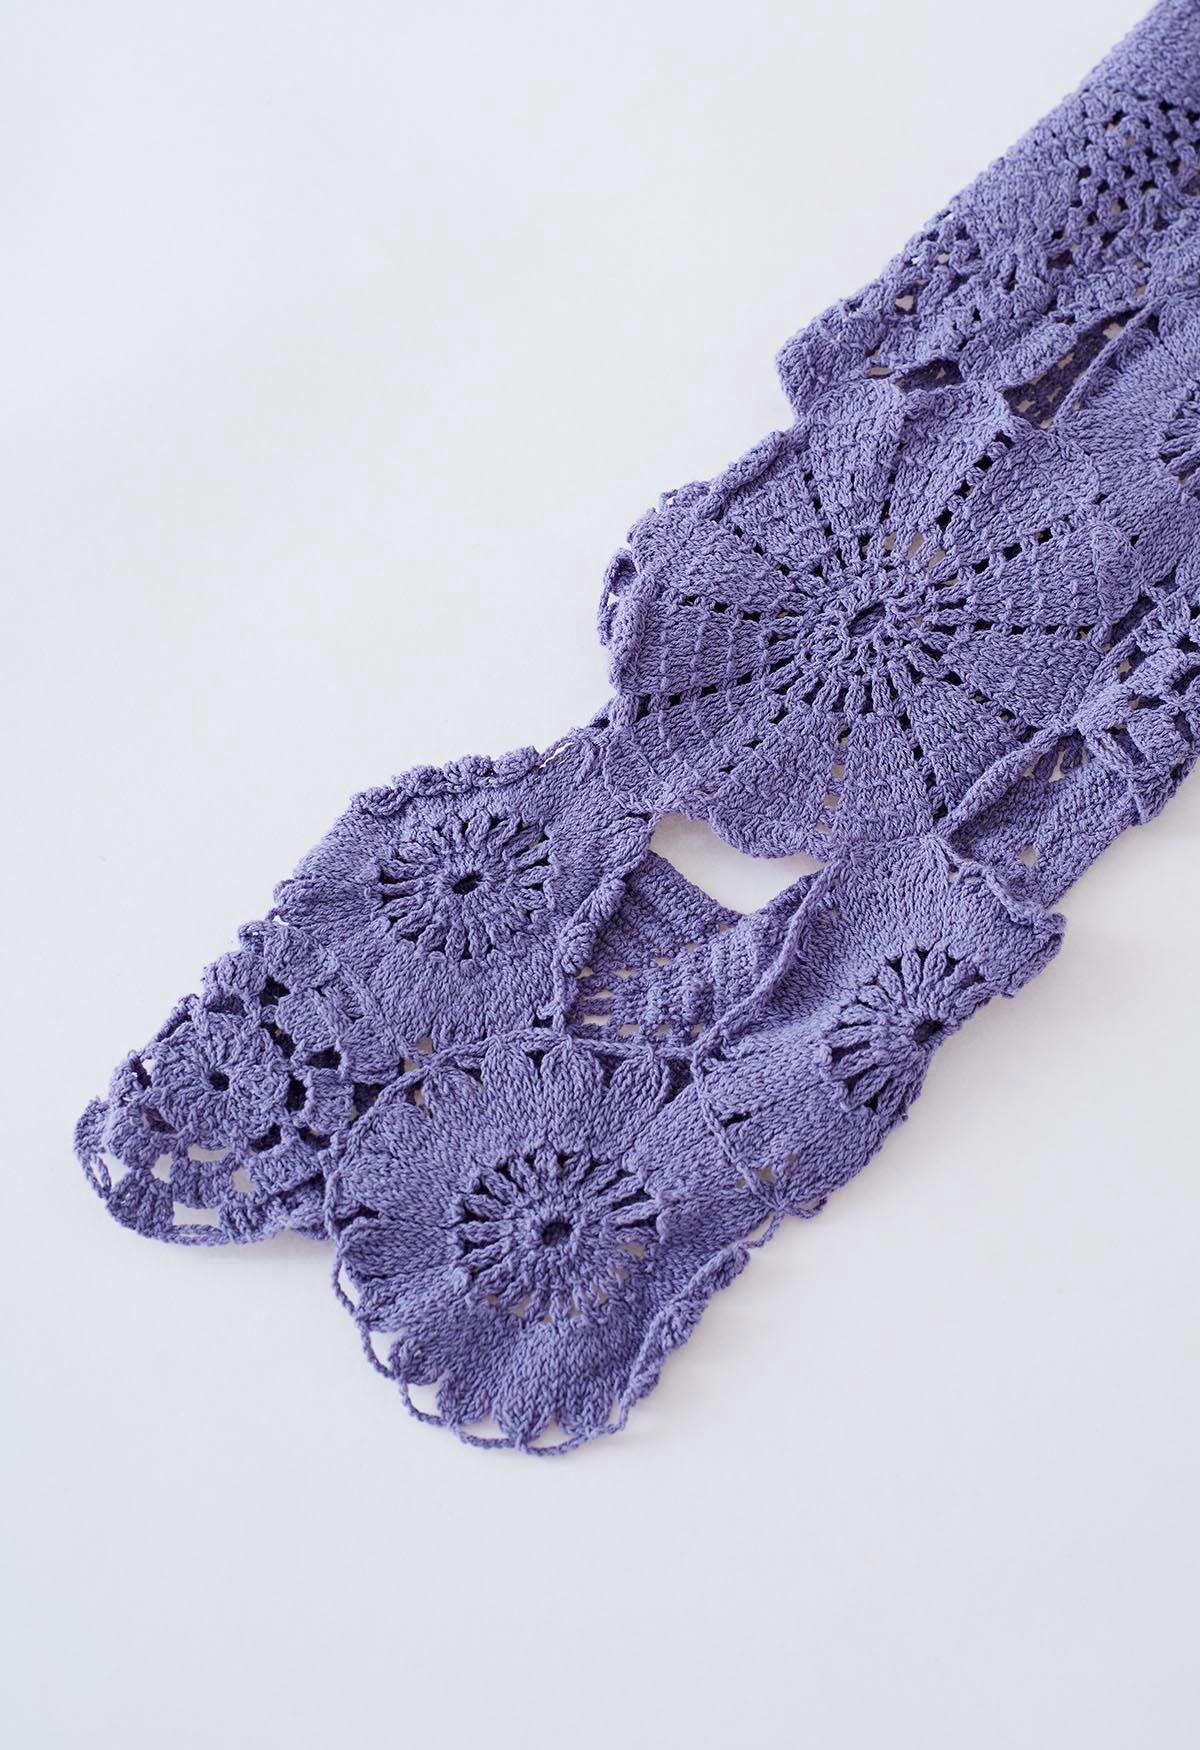 Flower Land Crochet Crop Top in Purple